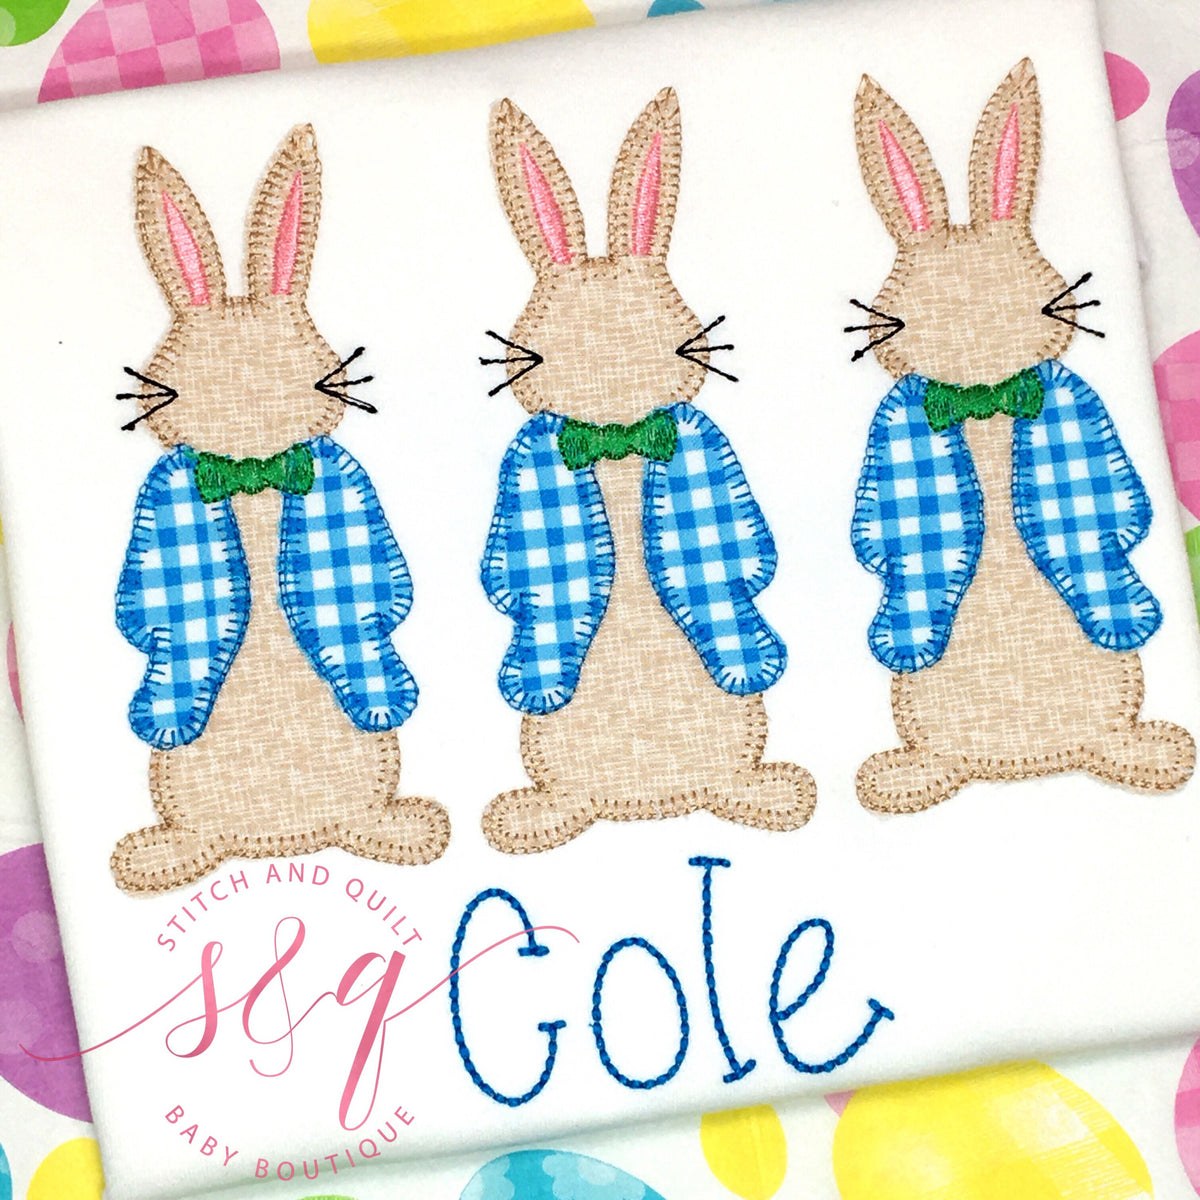 Boy Easter Rabbit, Boy Easter shirt, Boy Easter bunny, baby boy Easter outfit, Baby Easter outfit, Baby Easter shirt, boy Easter bunny shirt